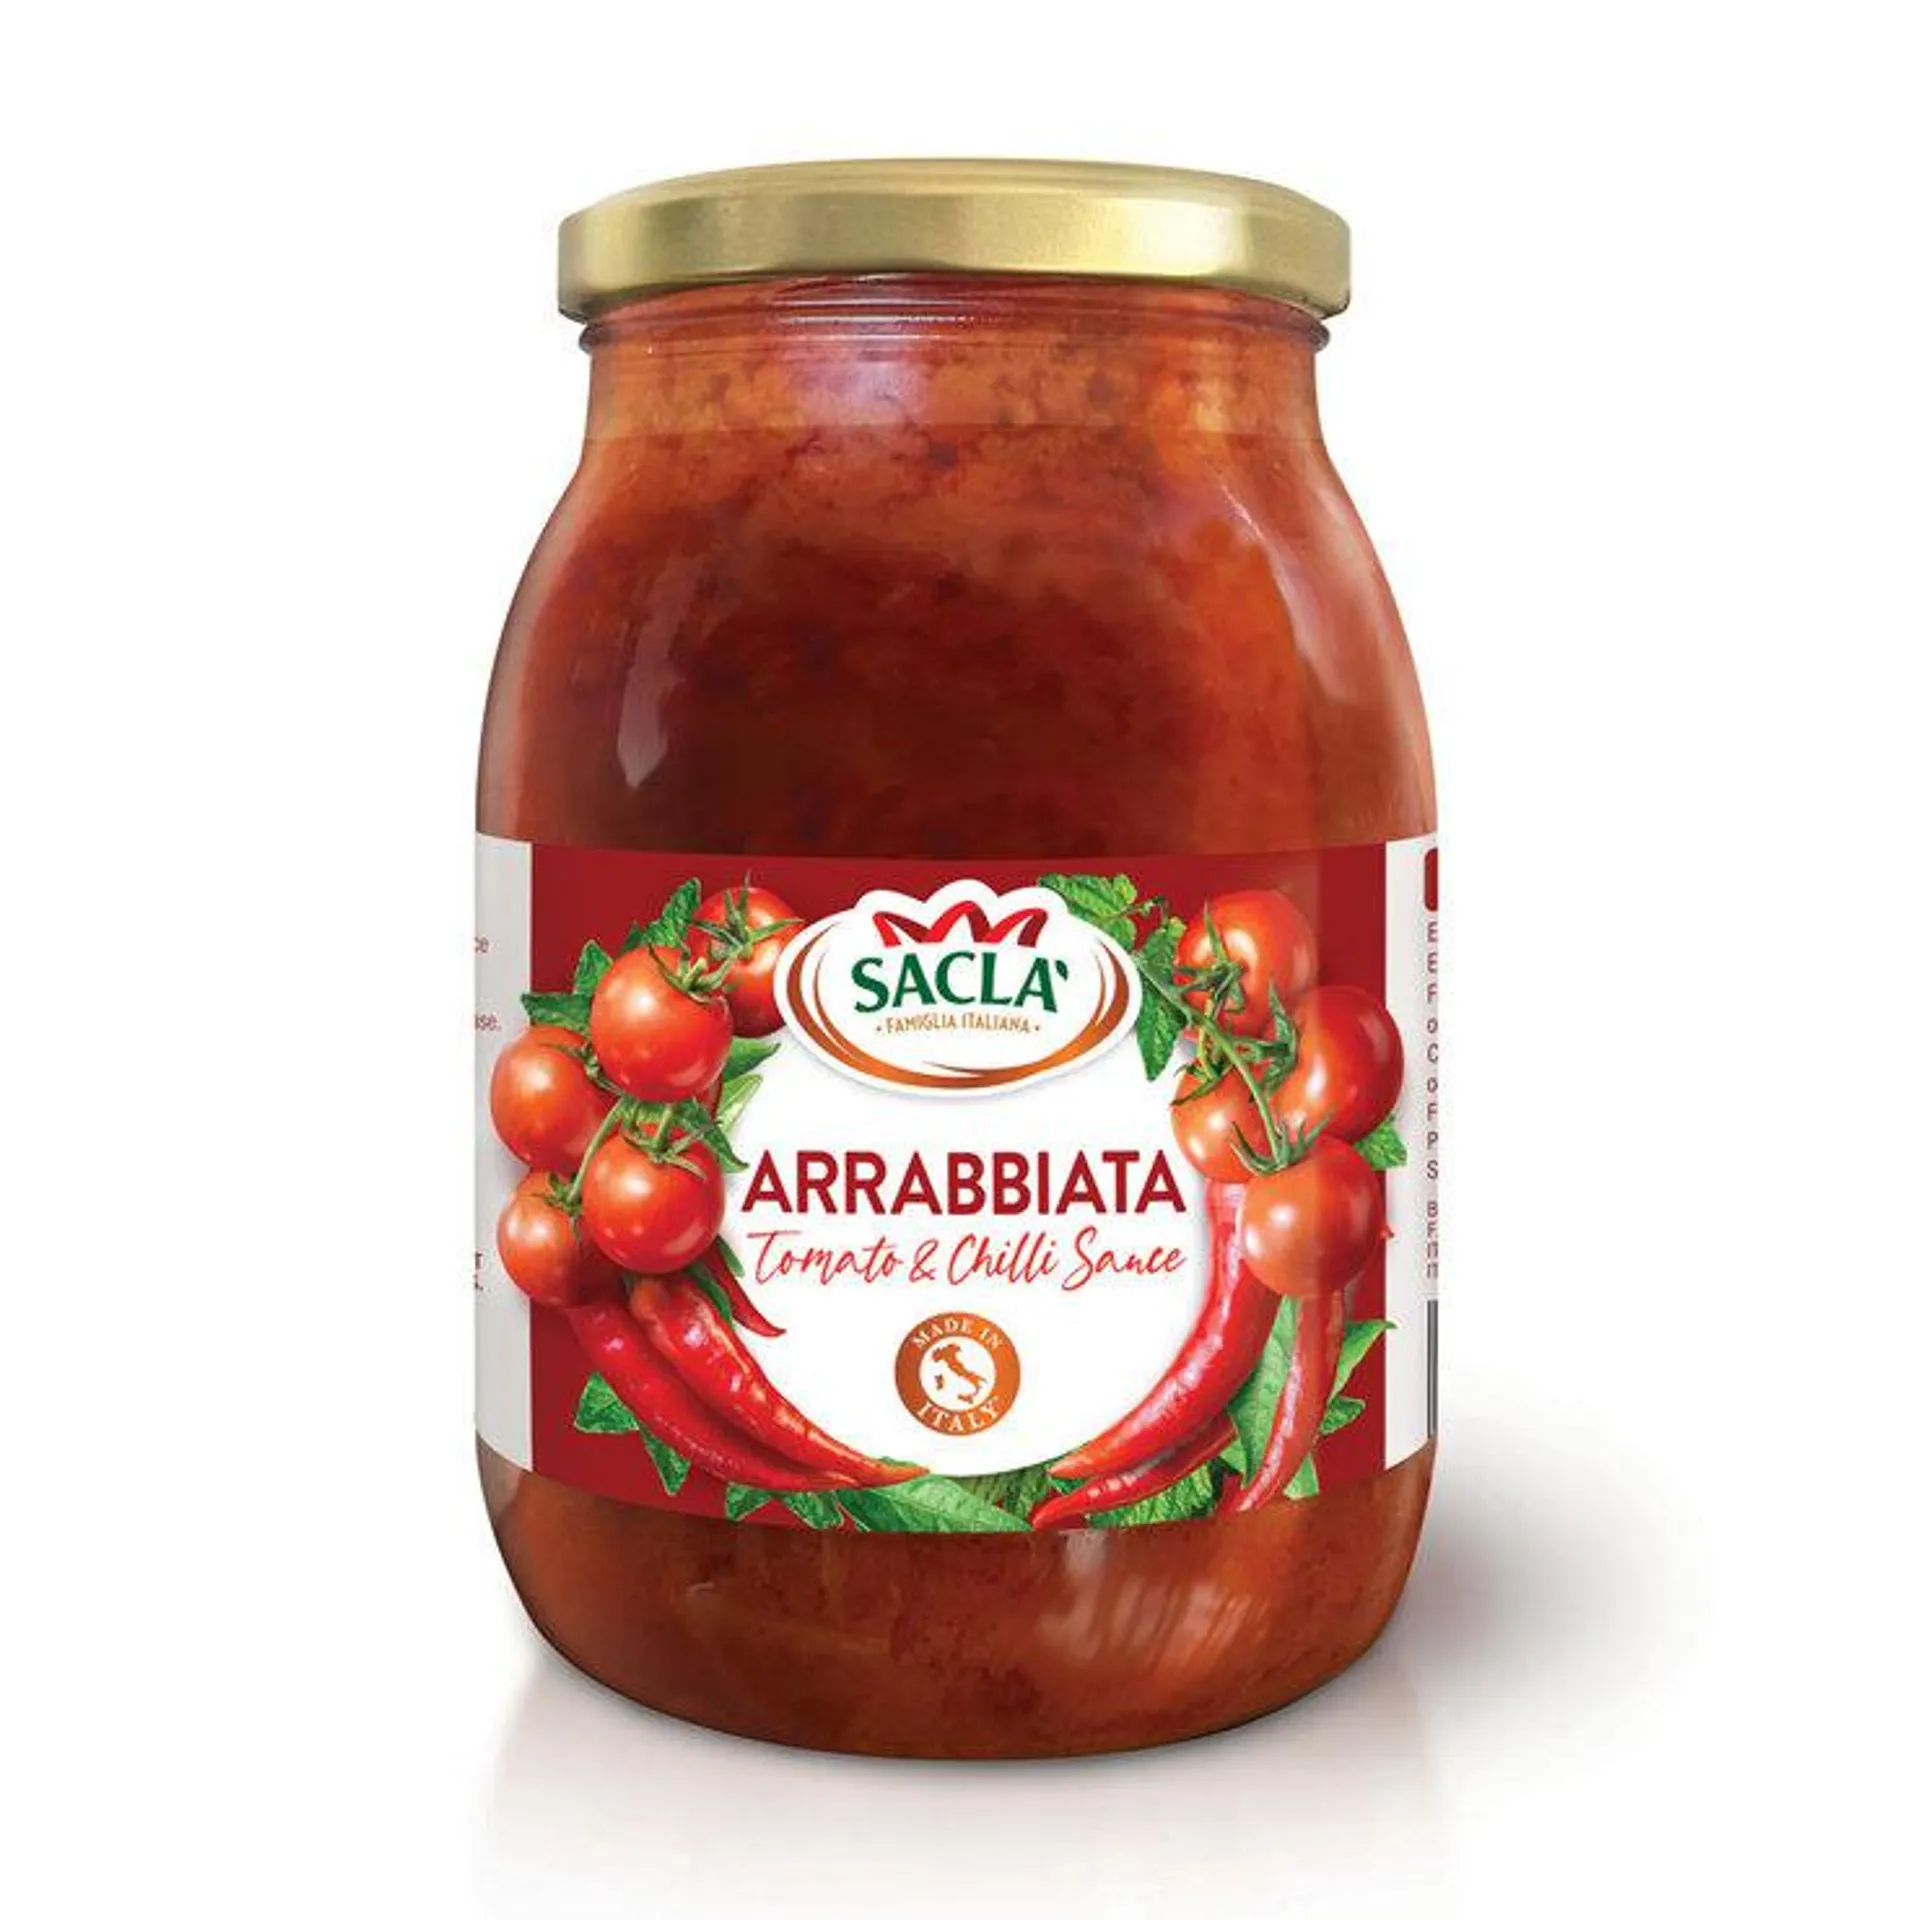 Sacla Arrabbiata Sauce, 980g